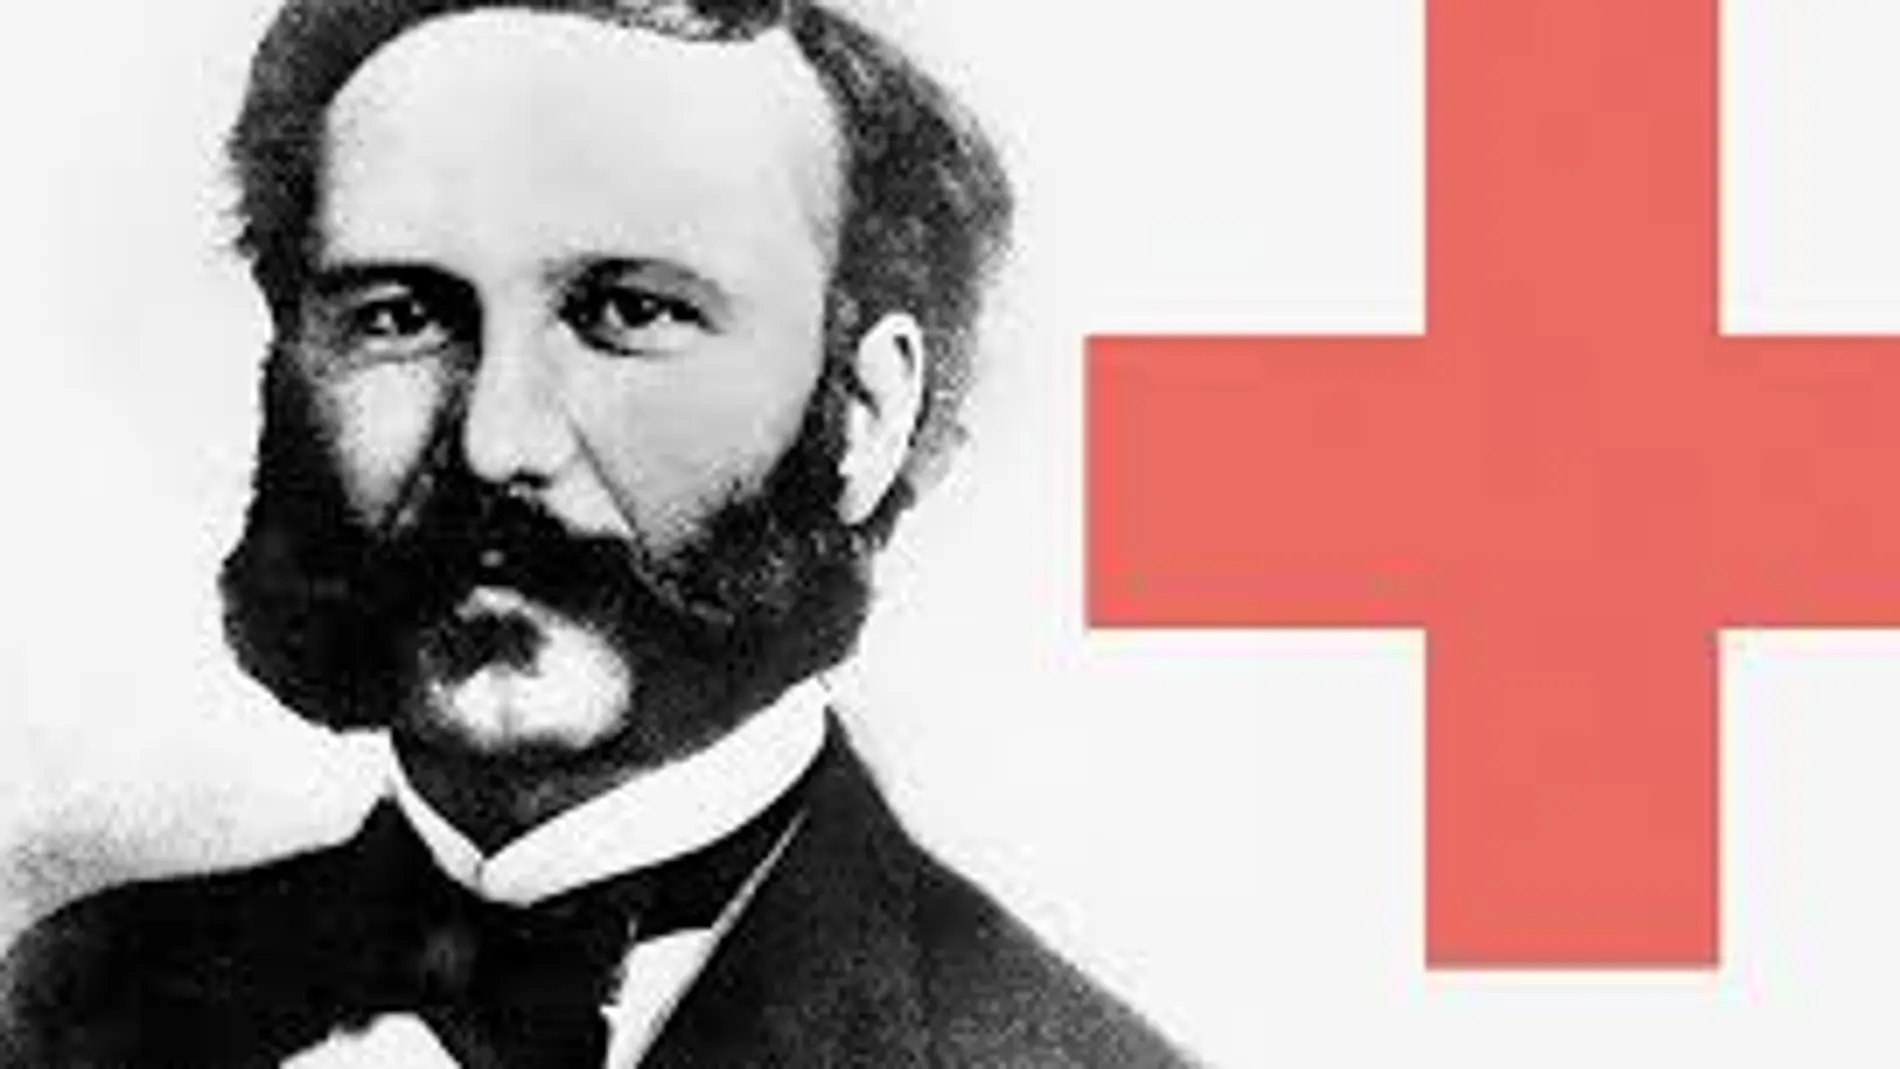 Efemérides de hoy 8 de mayo de 2022: Se celebra el Día Mundial de la Cruz Roja y de la Media Luna Roja, que conmemora el aniversario del nacimiento de su fundador.